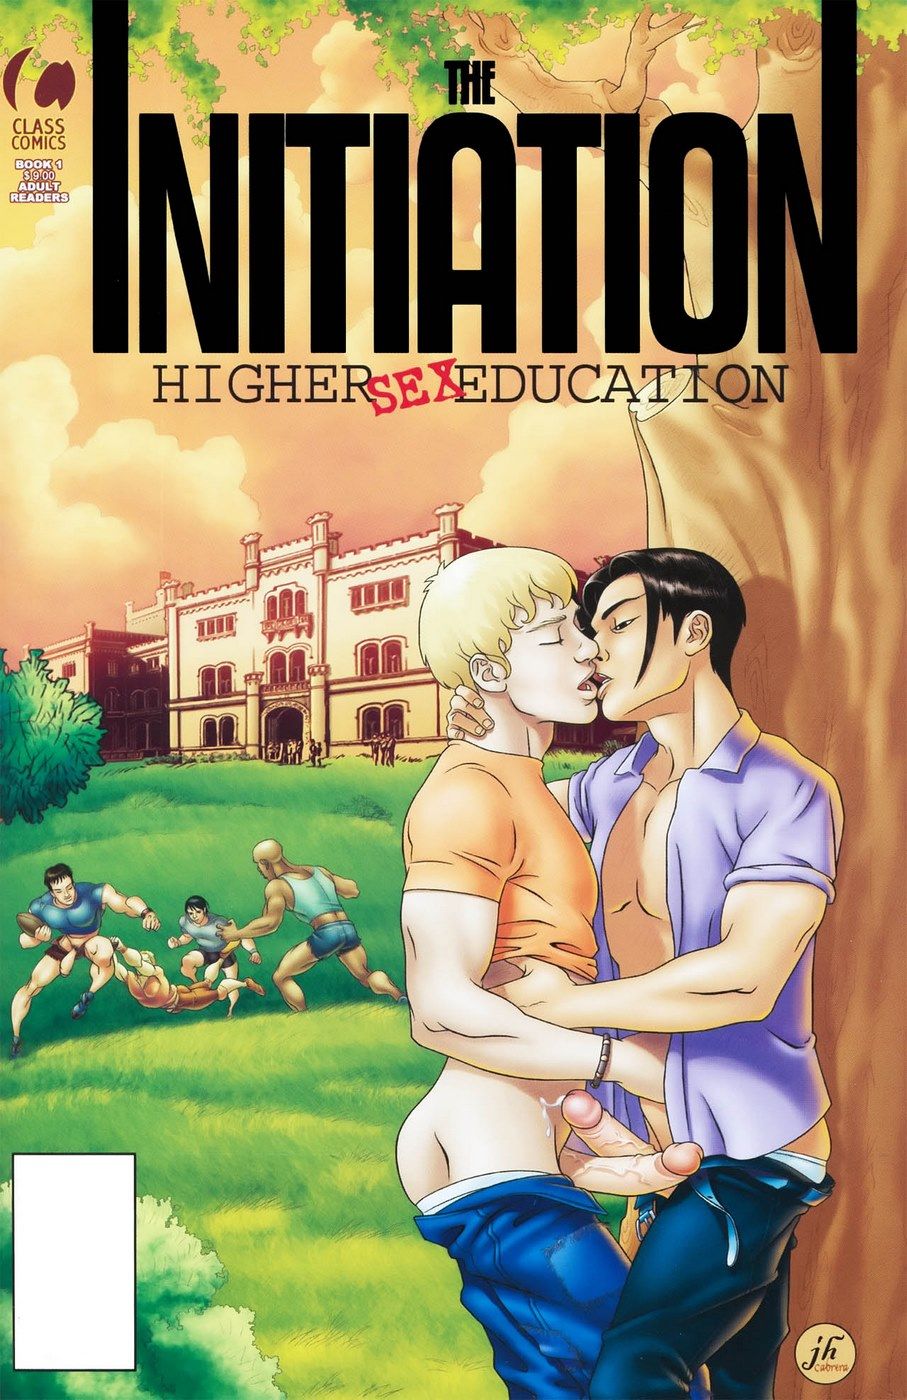 게이 이 개시 높 성별 교육 page 1